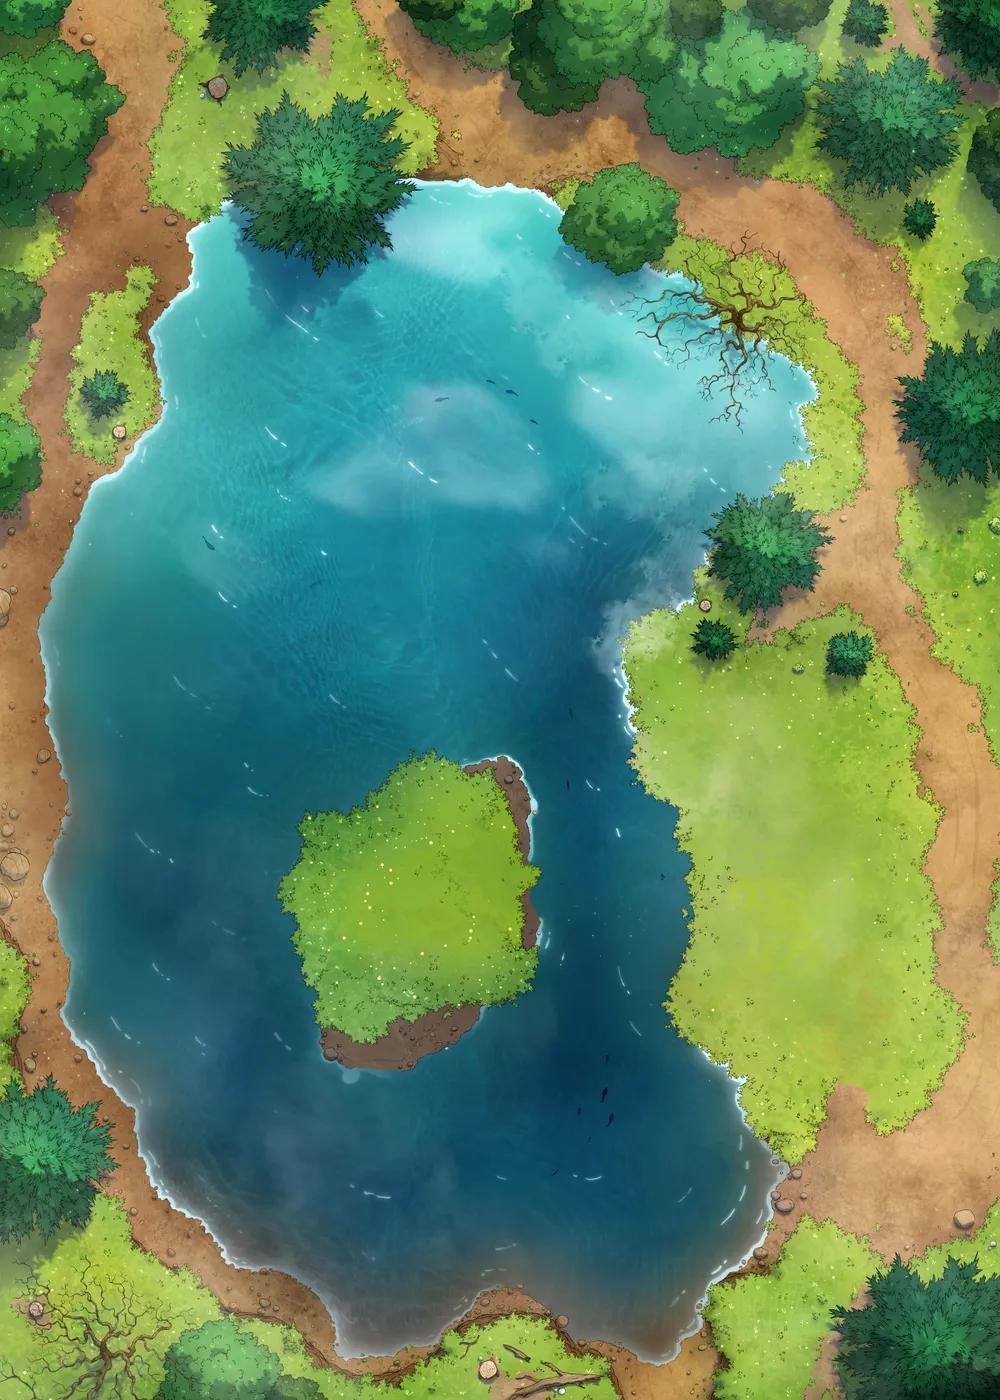 Rusty Robot Lake map, Natural variant